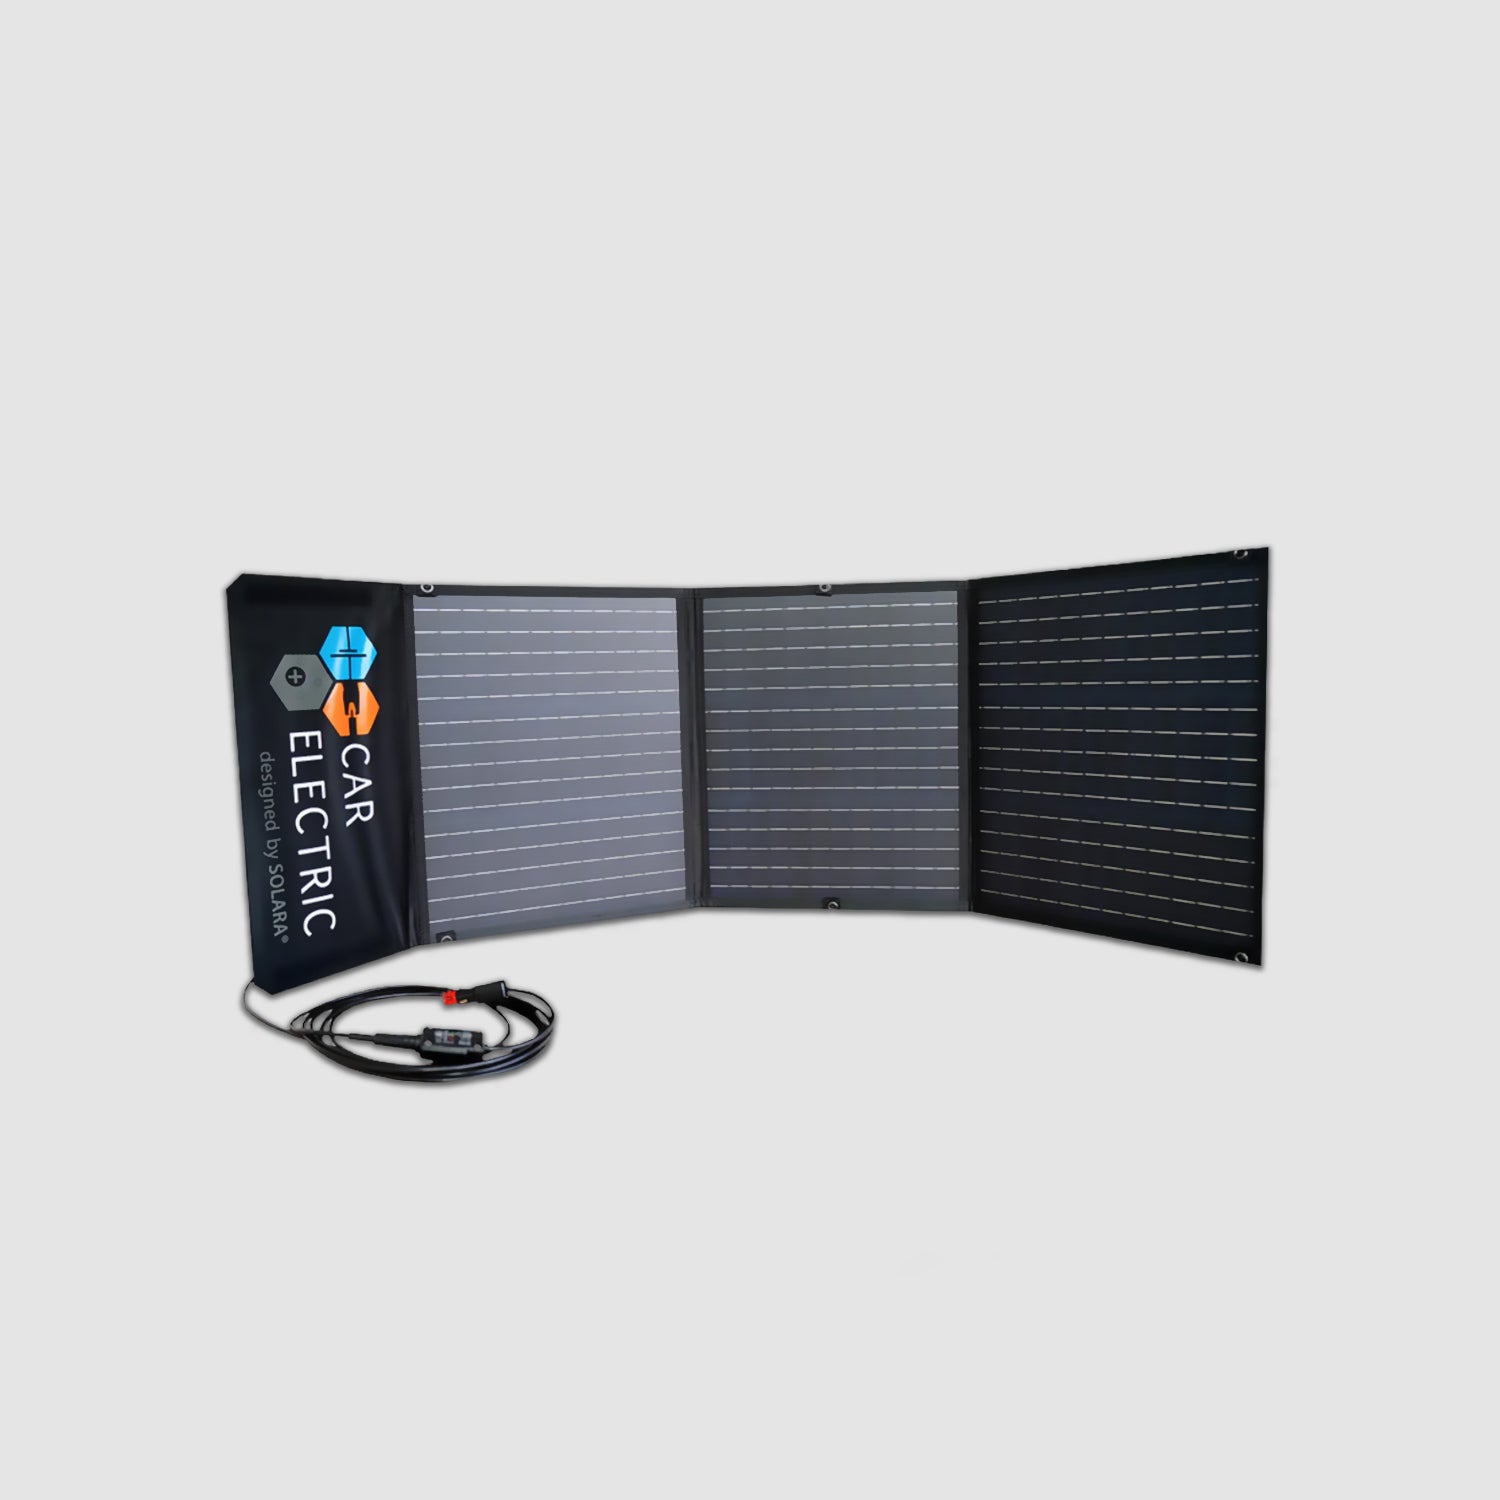 Solartasche 120Wp Steckbar-Einfach – The Bullishow